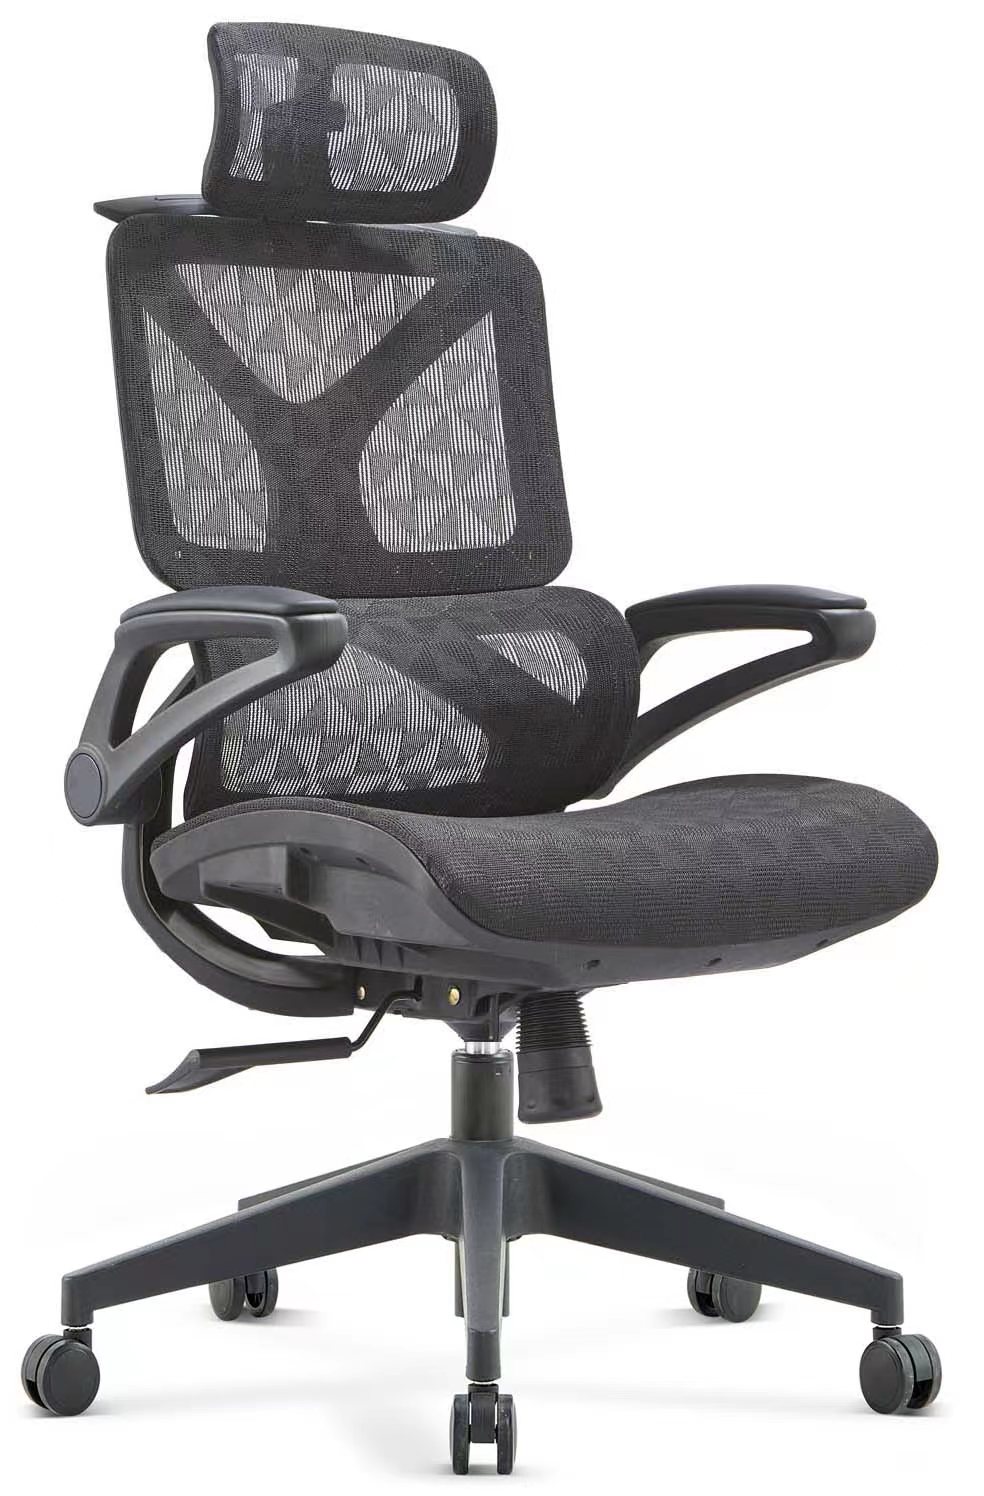 Qhov zoo tshaj plaws Ergonomic Office Chair 2